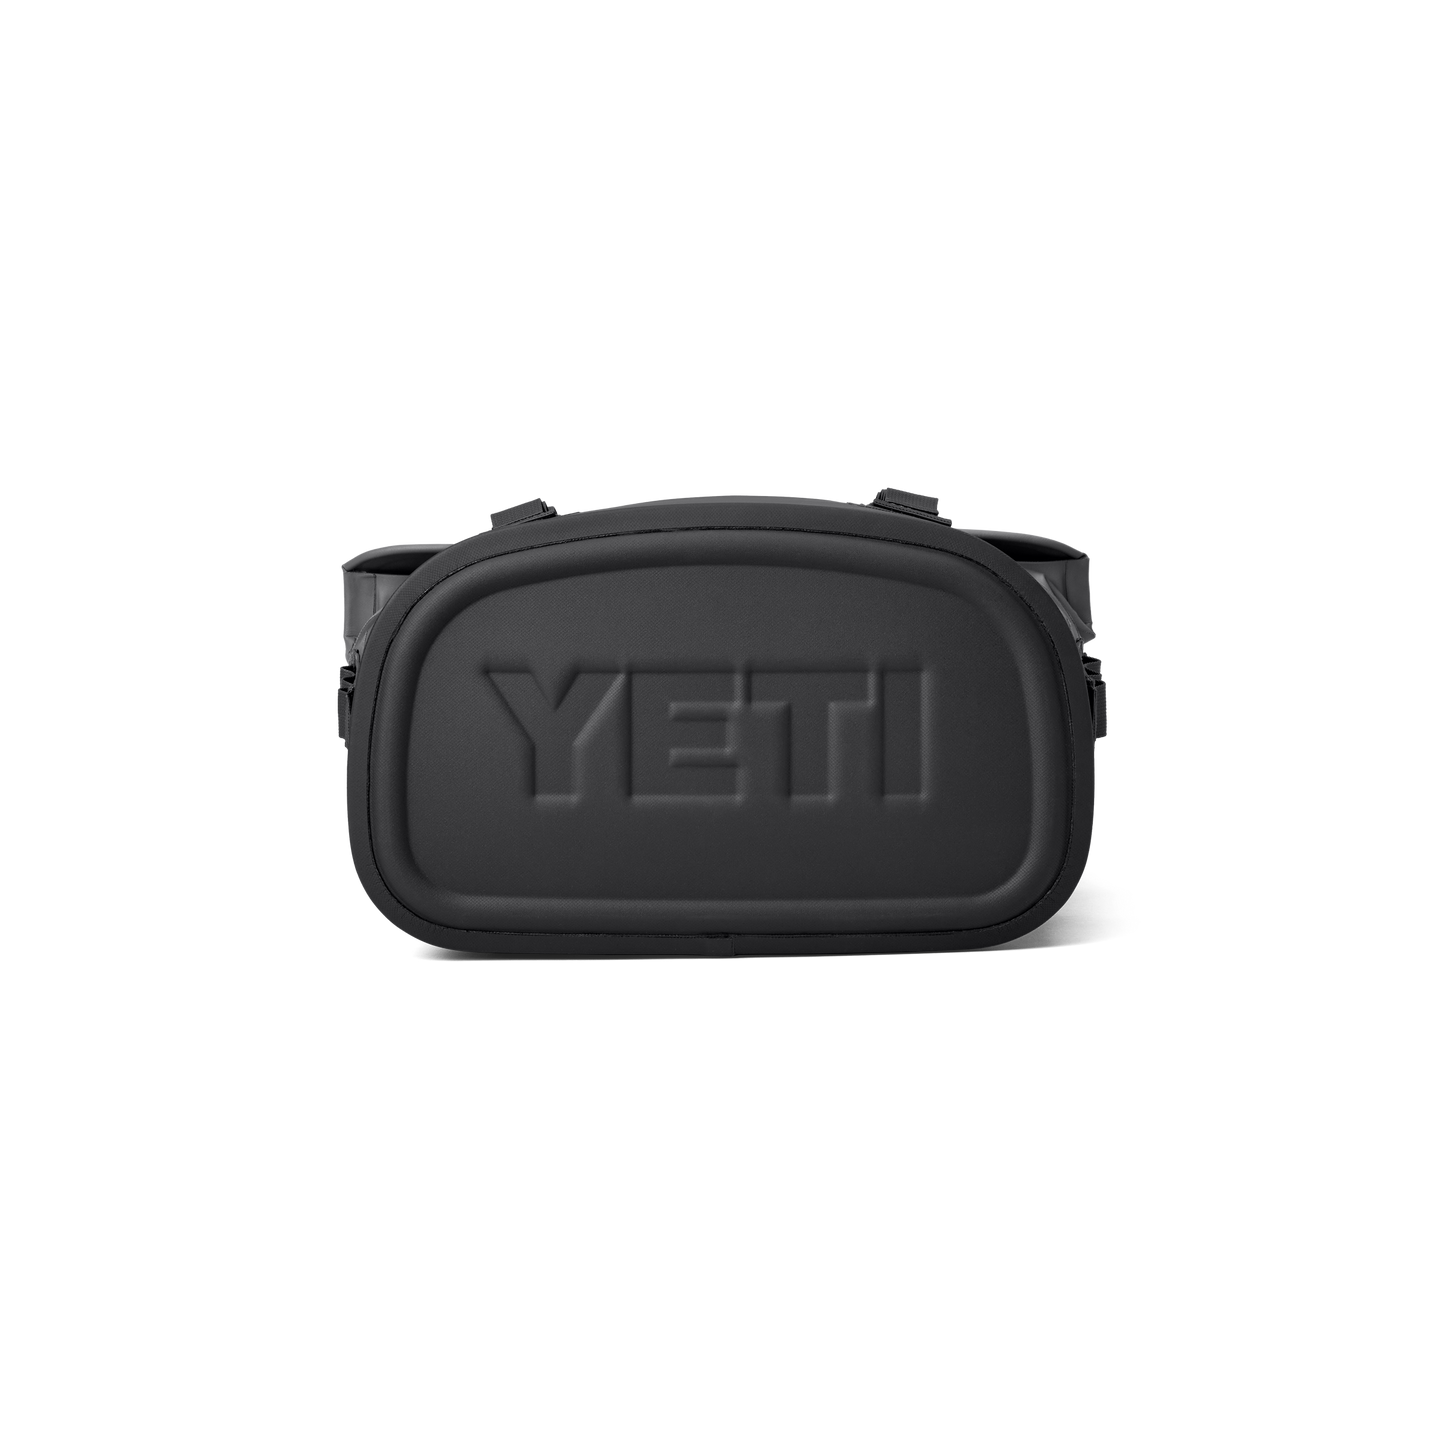 YETI Hopper® M12 Kühltaschen Rucksack Charcoal